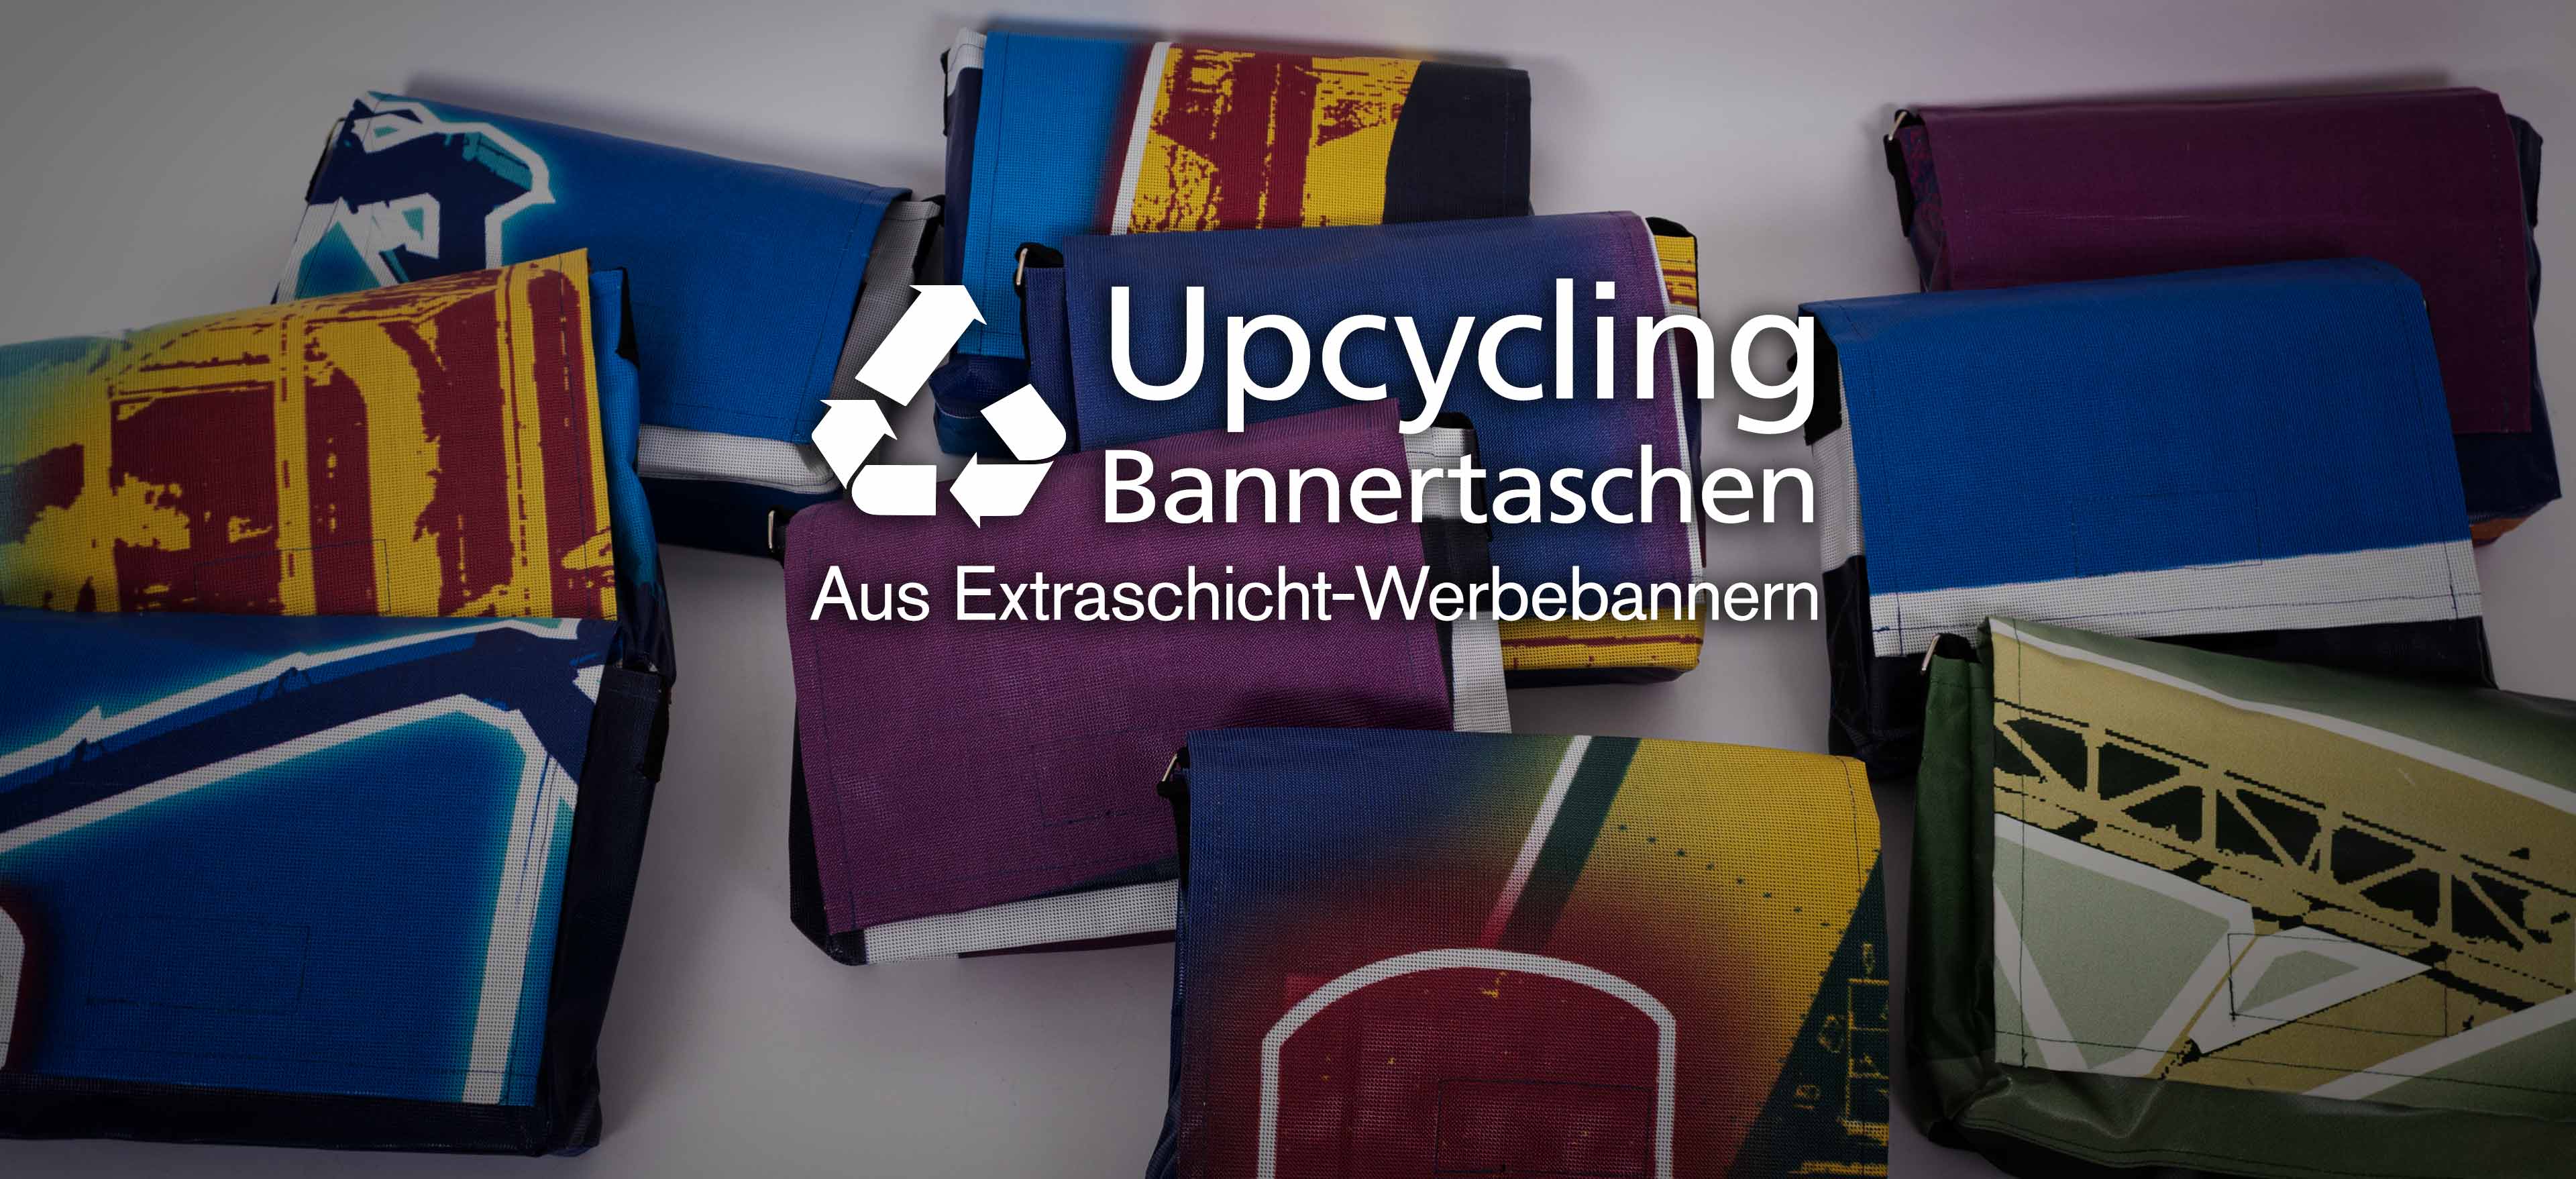 Upcycling Bannertasche_Ruhrgebiet